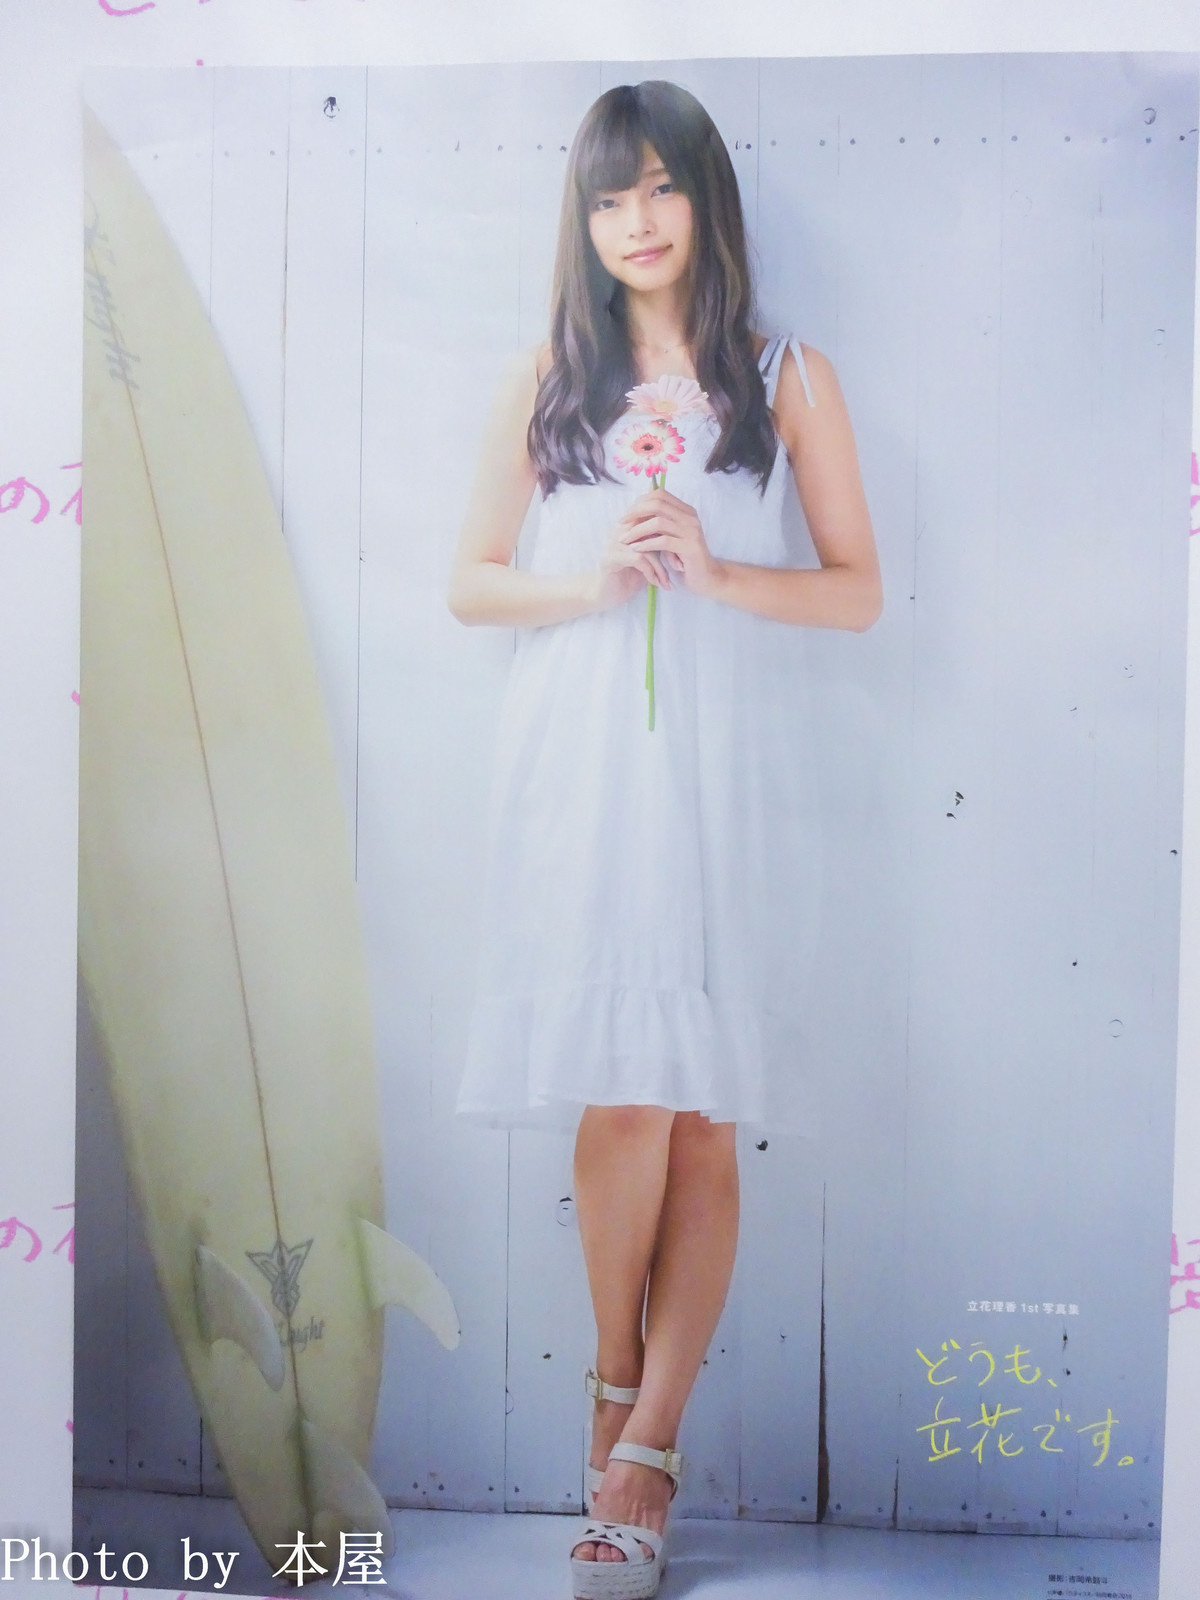 立花理香さん1st写真集 どうも 立花です の発売を記念した どうも 立花さんの衣装です が開催 アキバな本屋